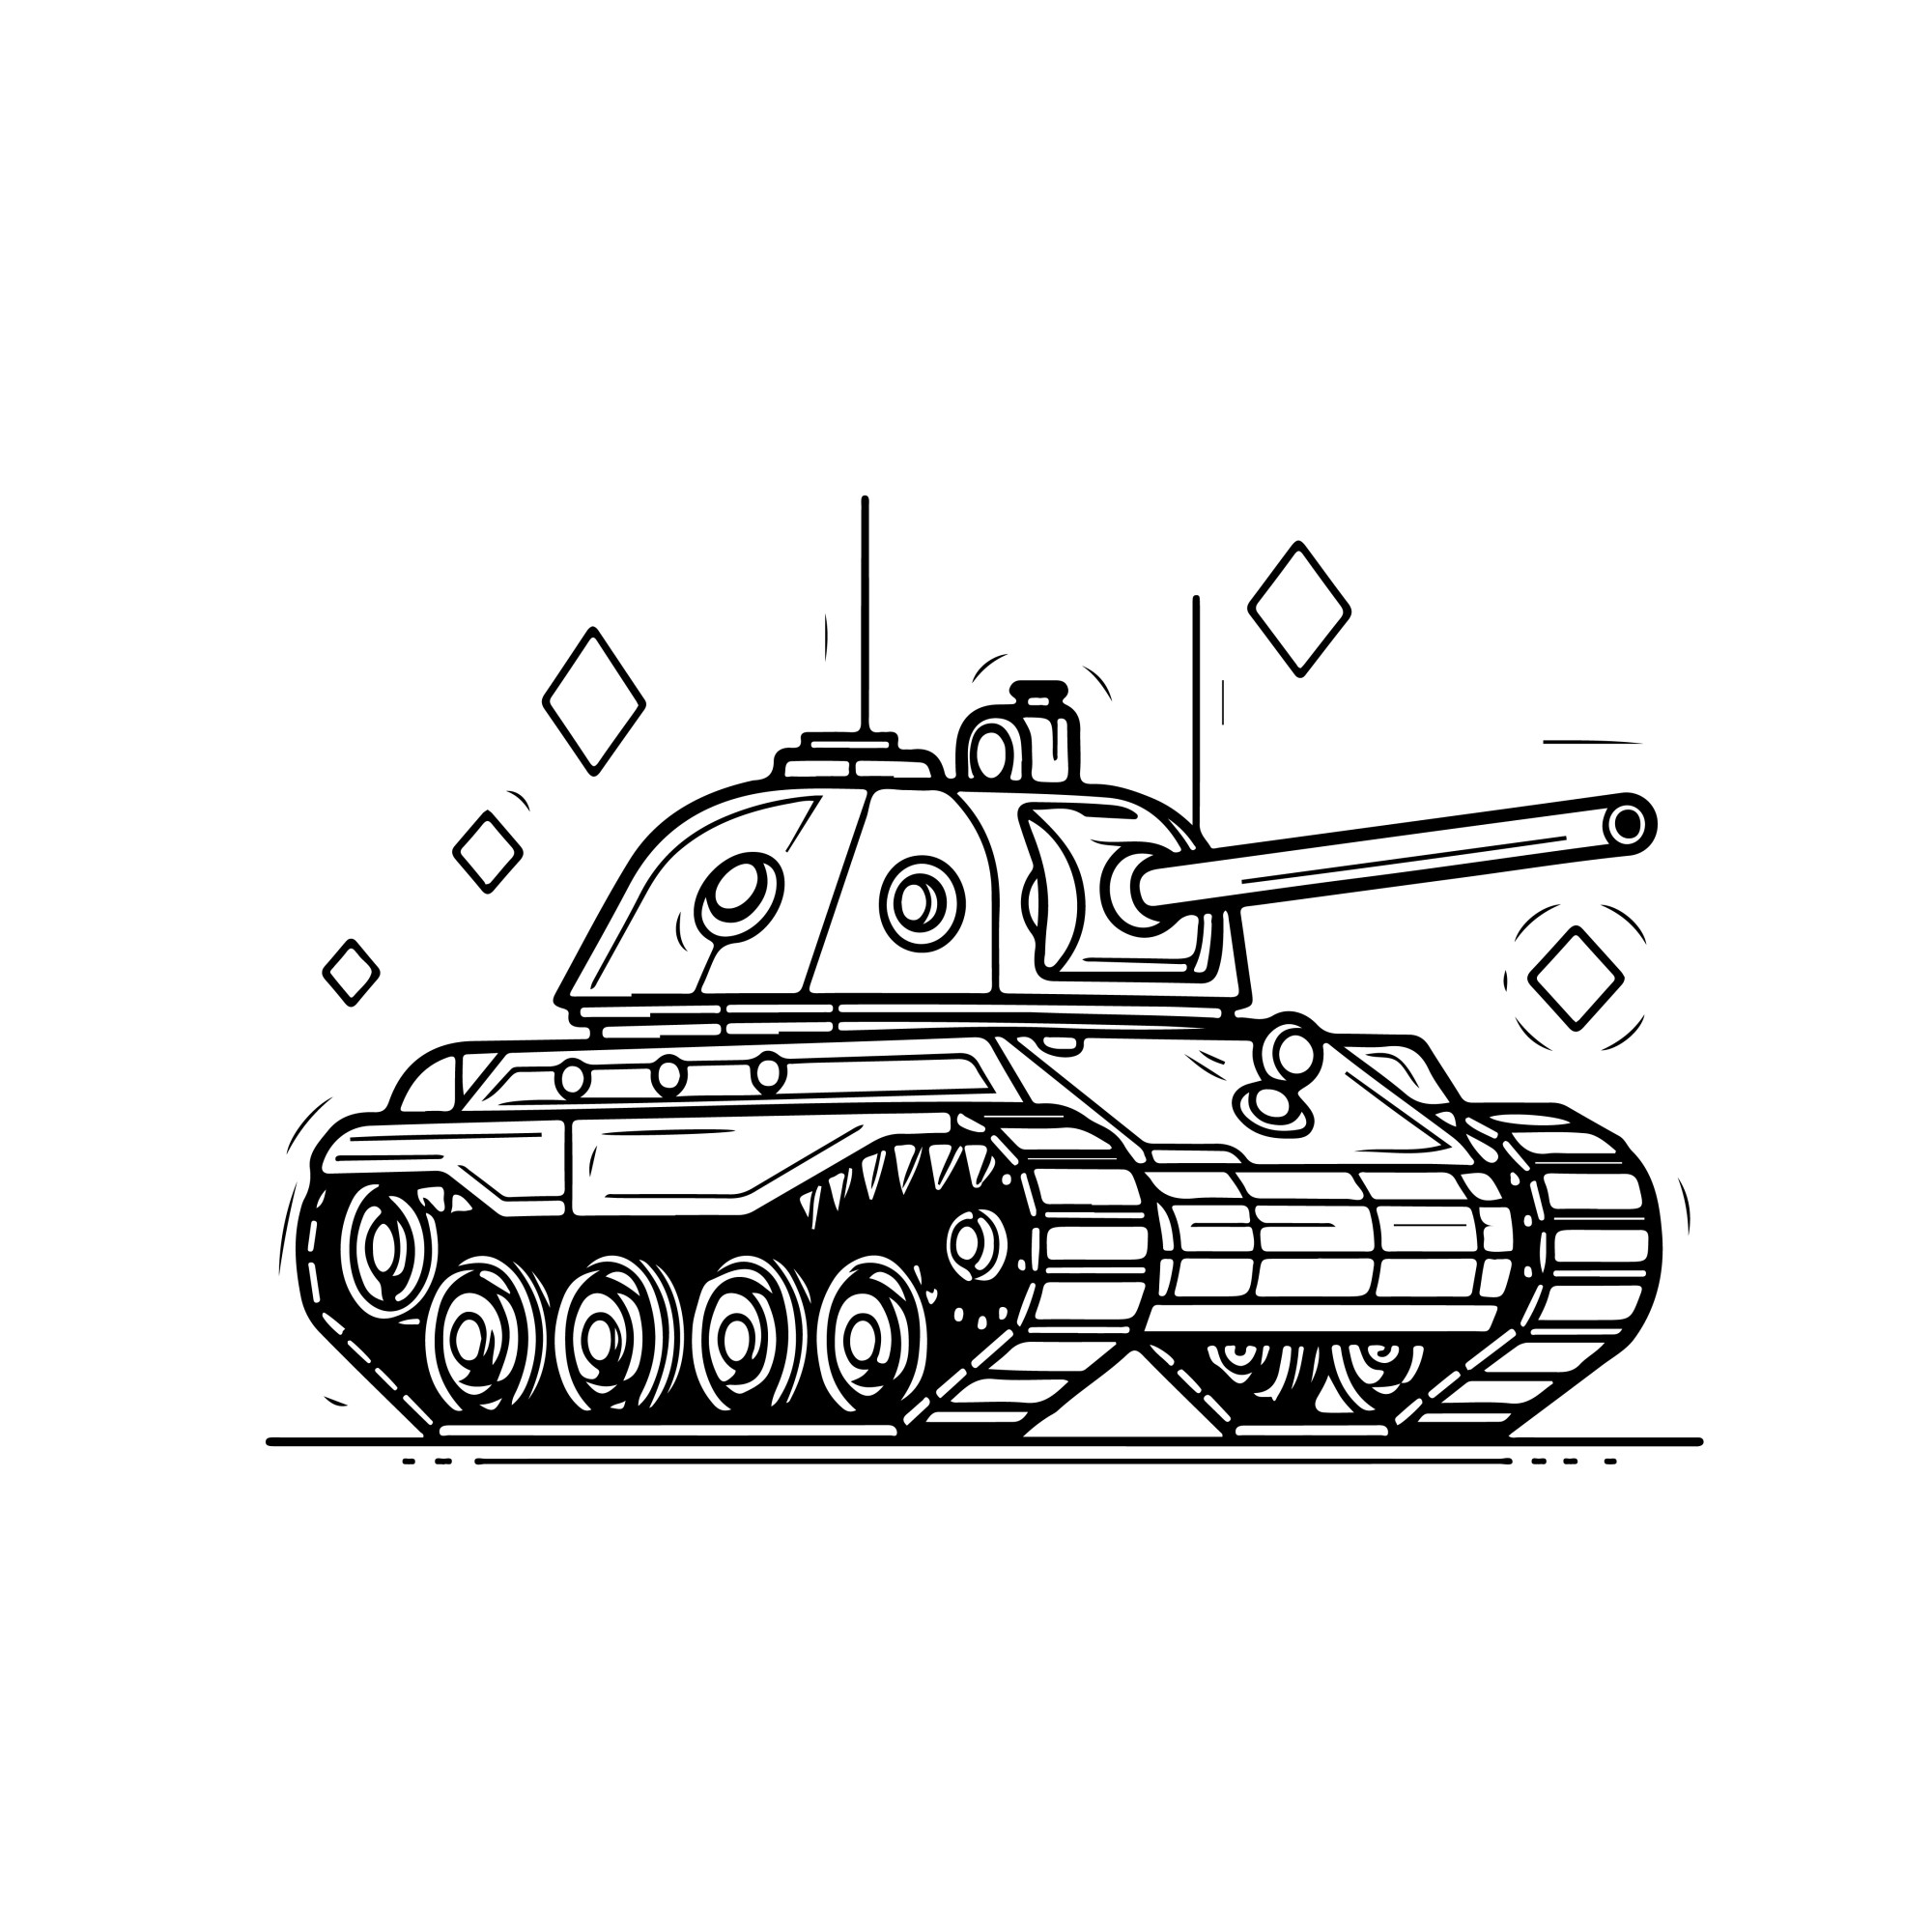 Раскраска для детей: мини-танк на прогулке